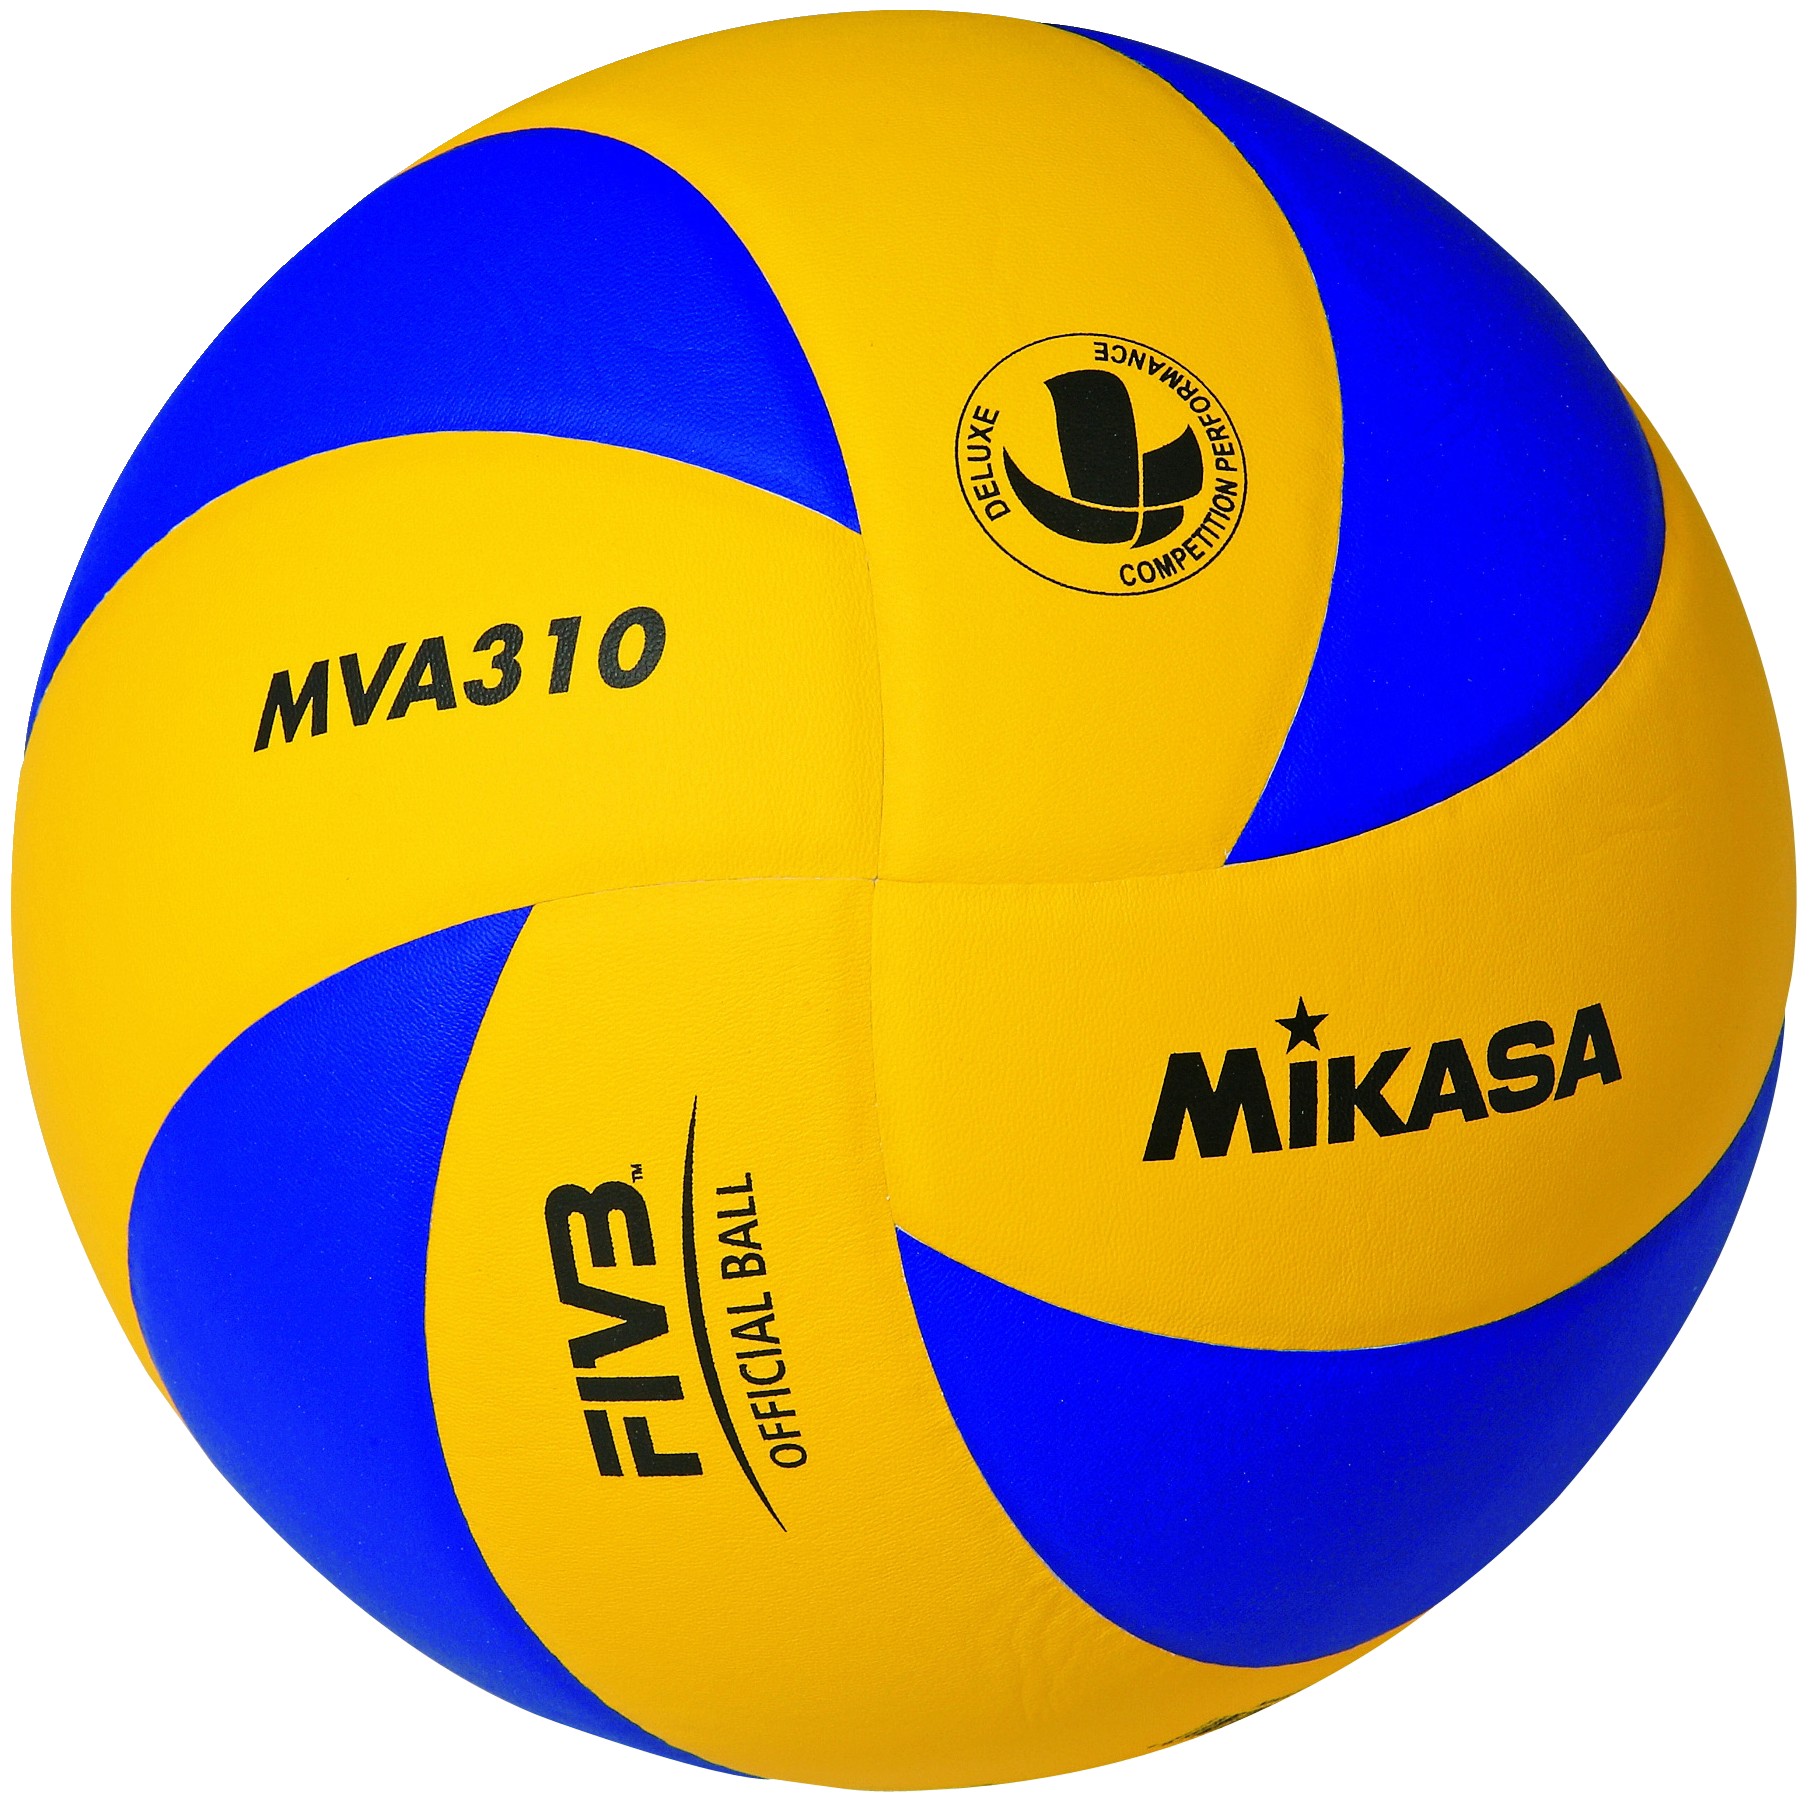 Volleyball Bundesliga pritscht und baggert weiterhin mit Mikasa